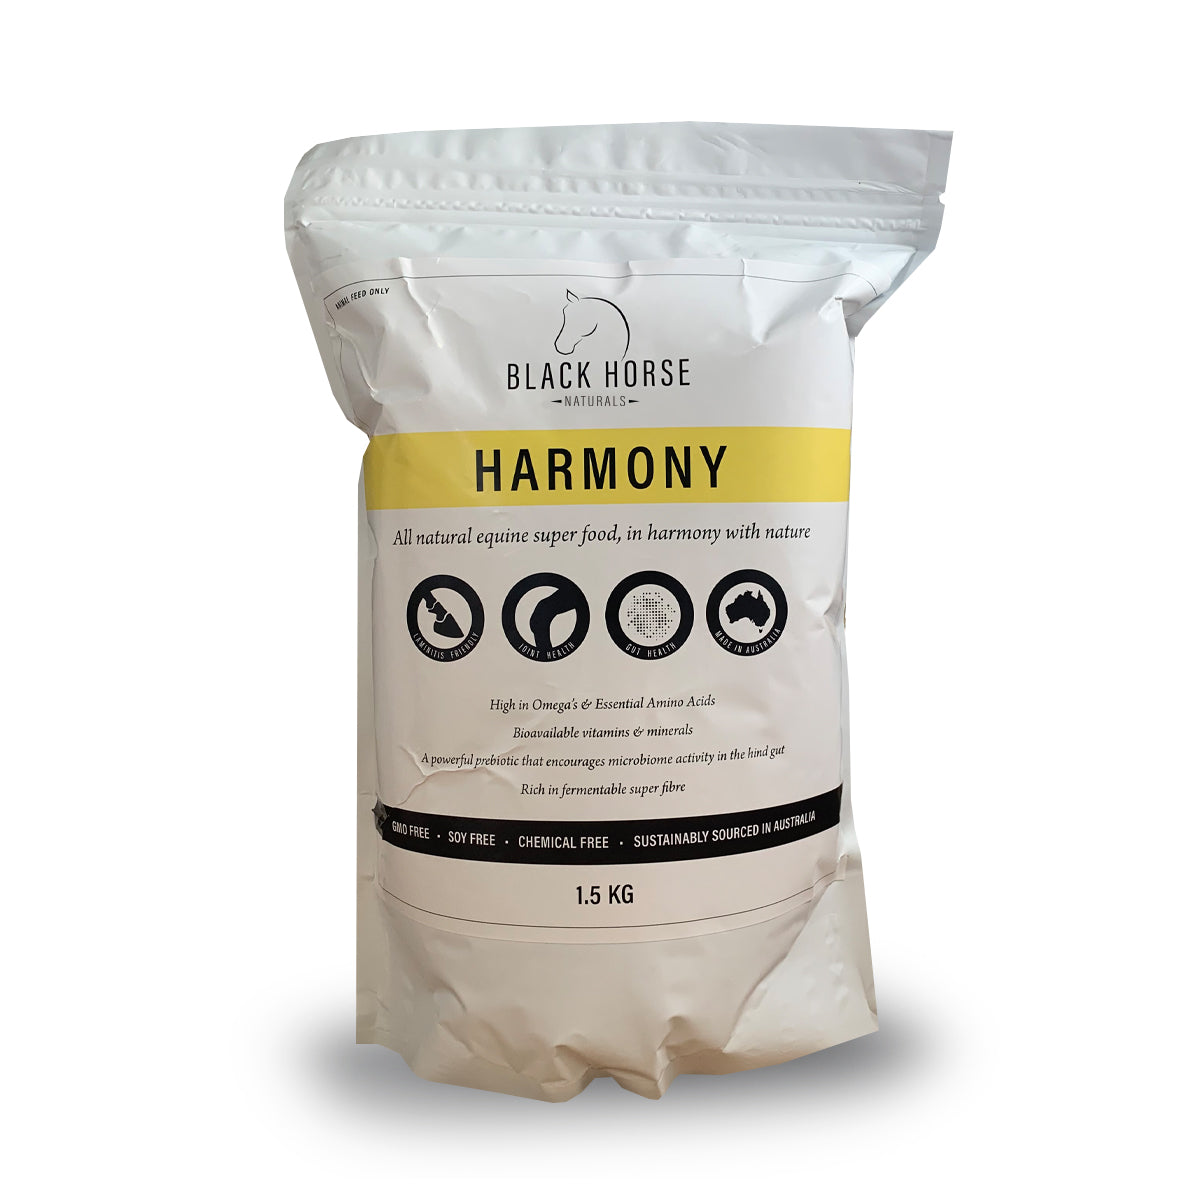 Harmony Probiotic